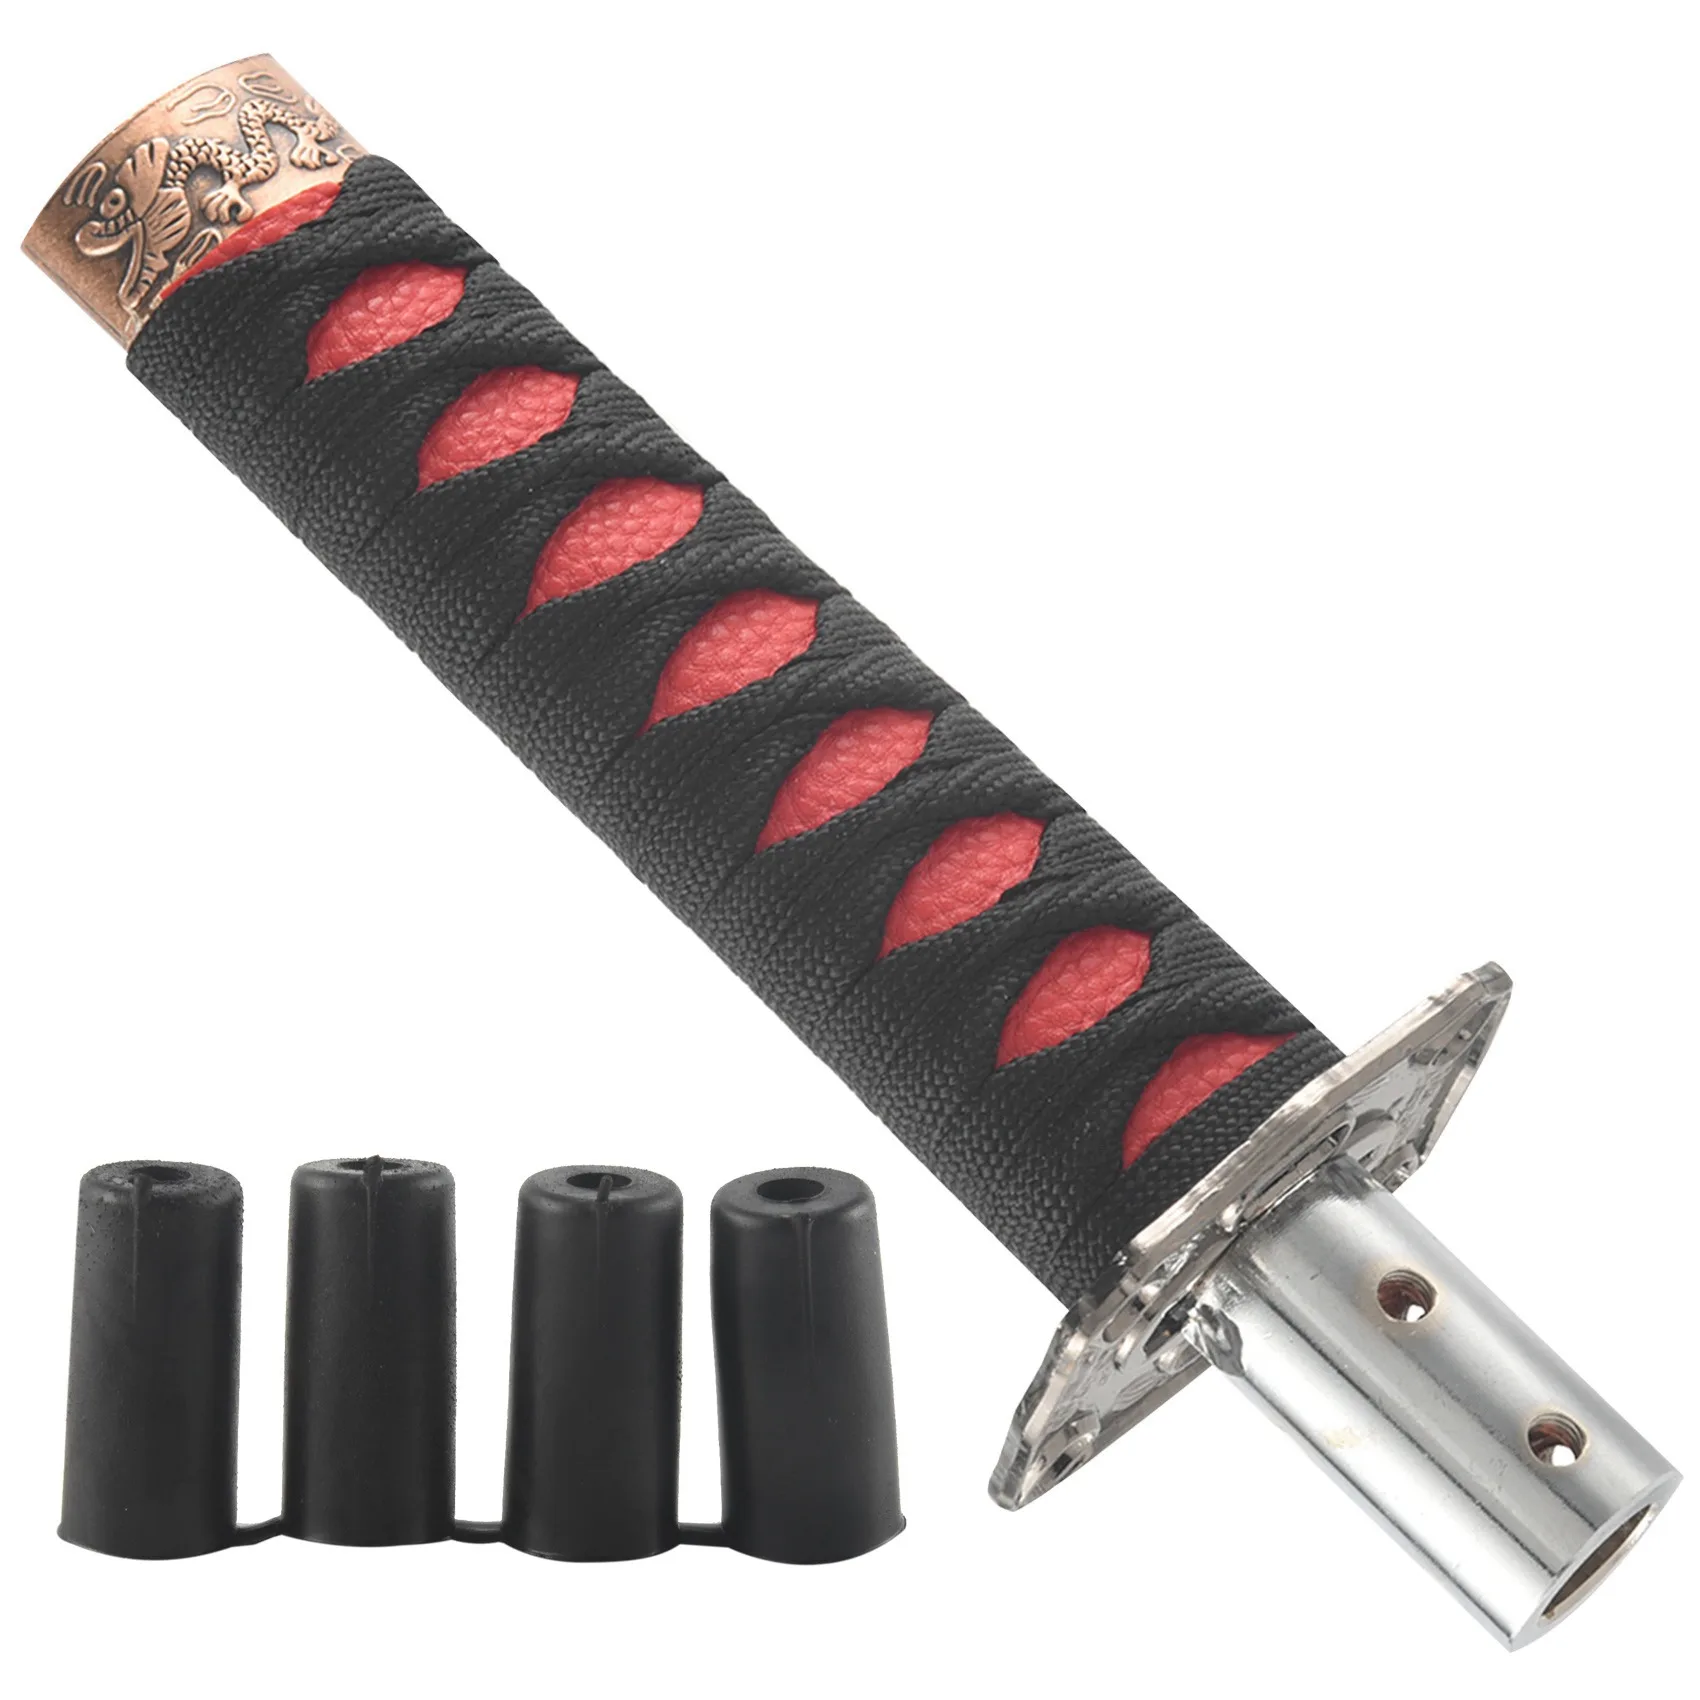 Универсальный меч Самурая, ручка переключения передач, Катана, металл, черный + красный, 15 см 2